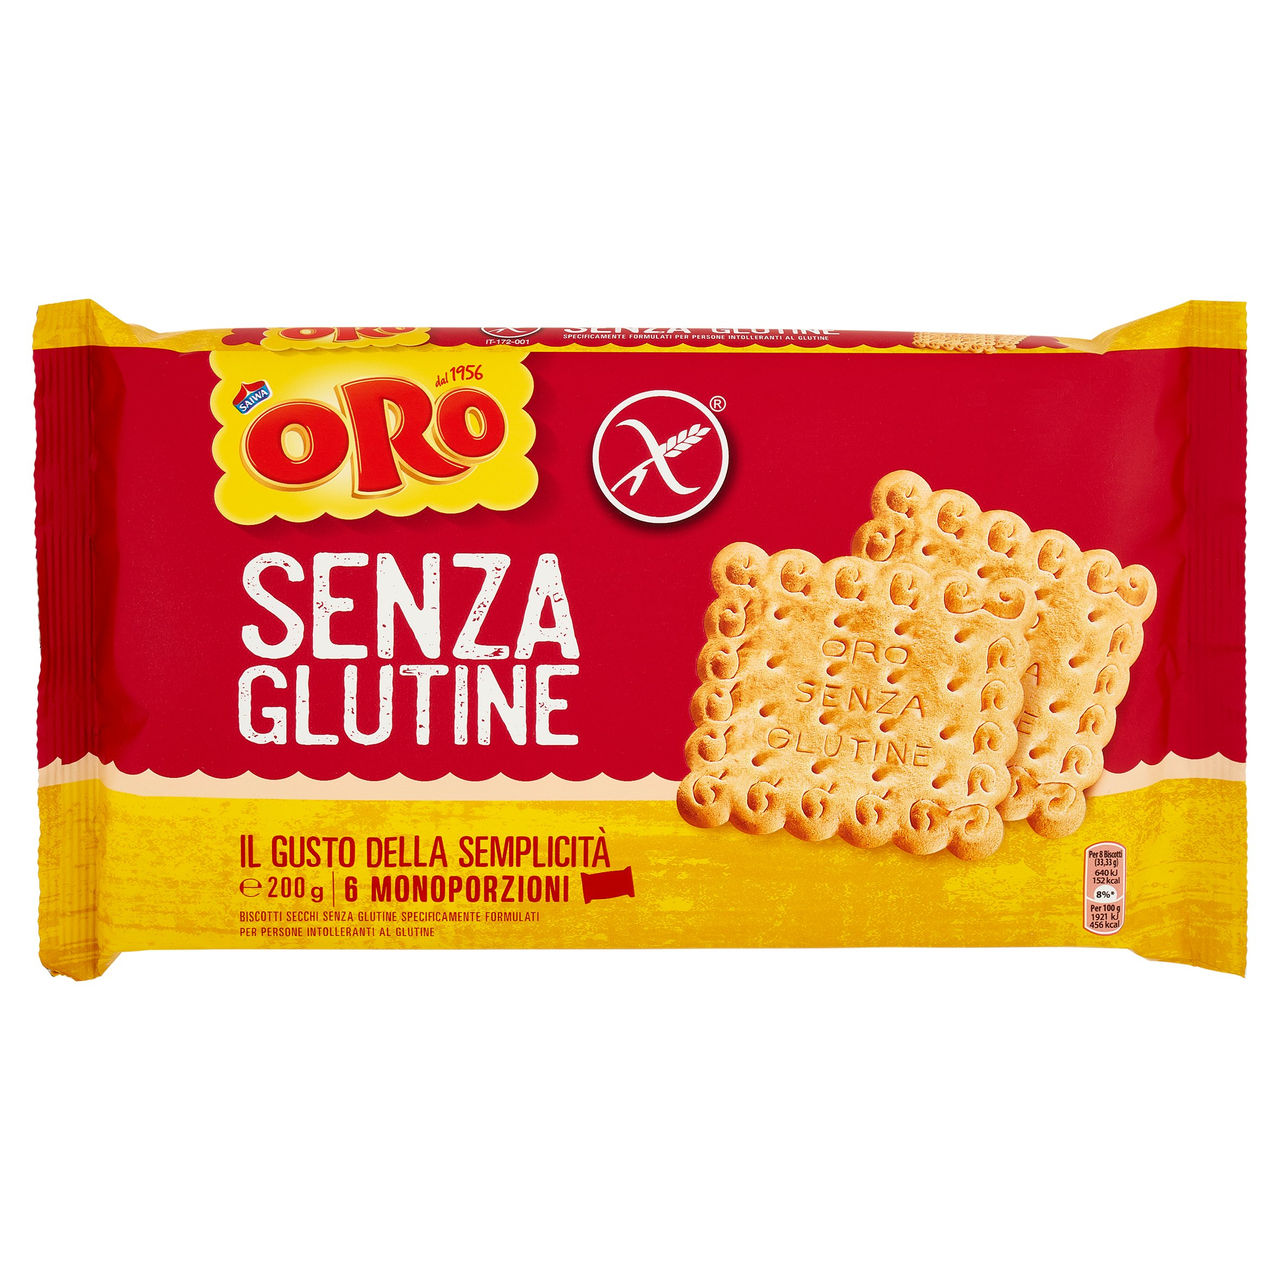 Oro Saiwa biscotti secchi Senza Glutine - 6 x 33,33 g